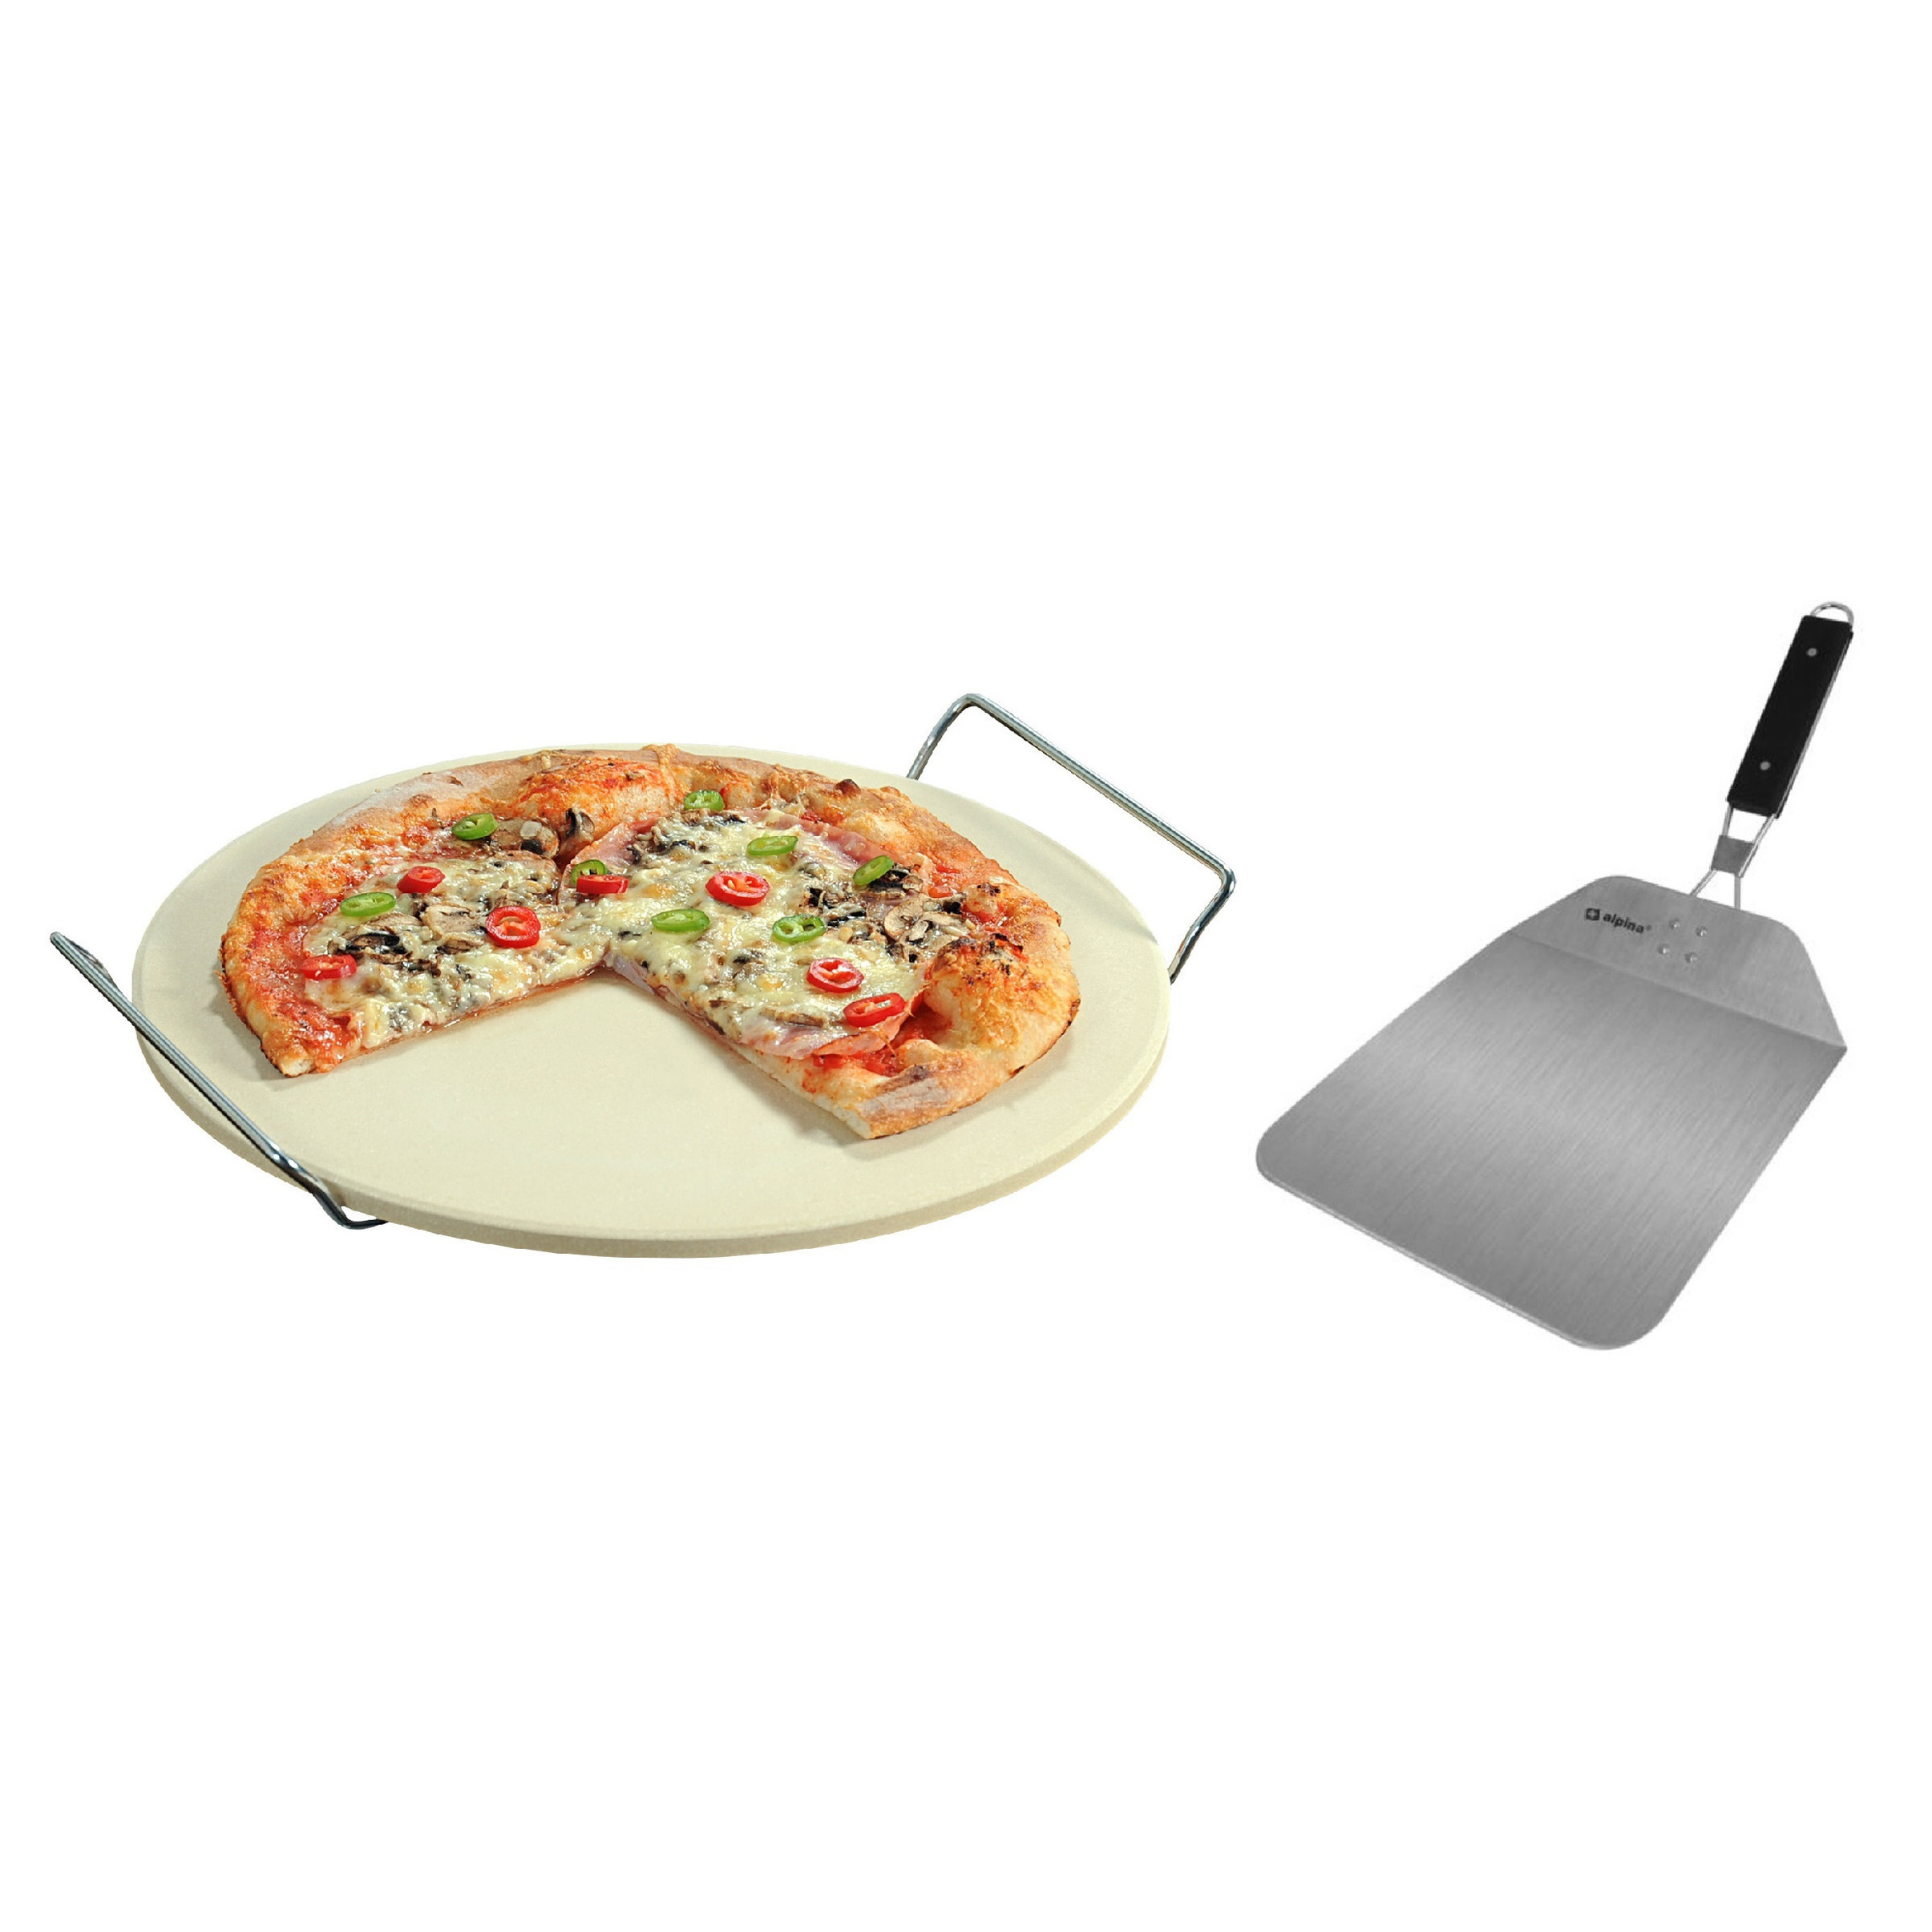 Keramieken pizzasteen rond 33 cm met handvaten en inklapbare RVS pizzaschep 25 cm